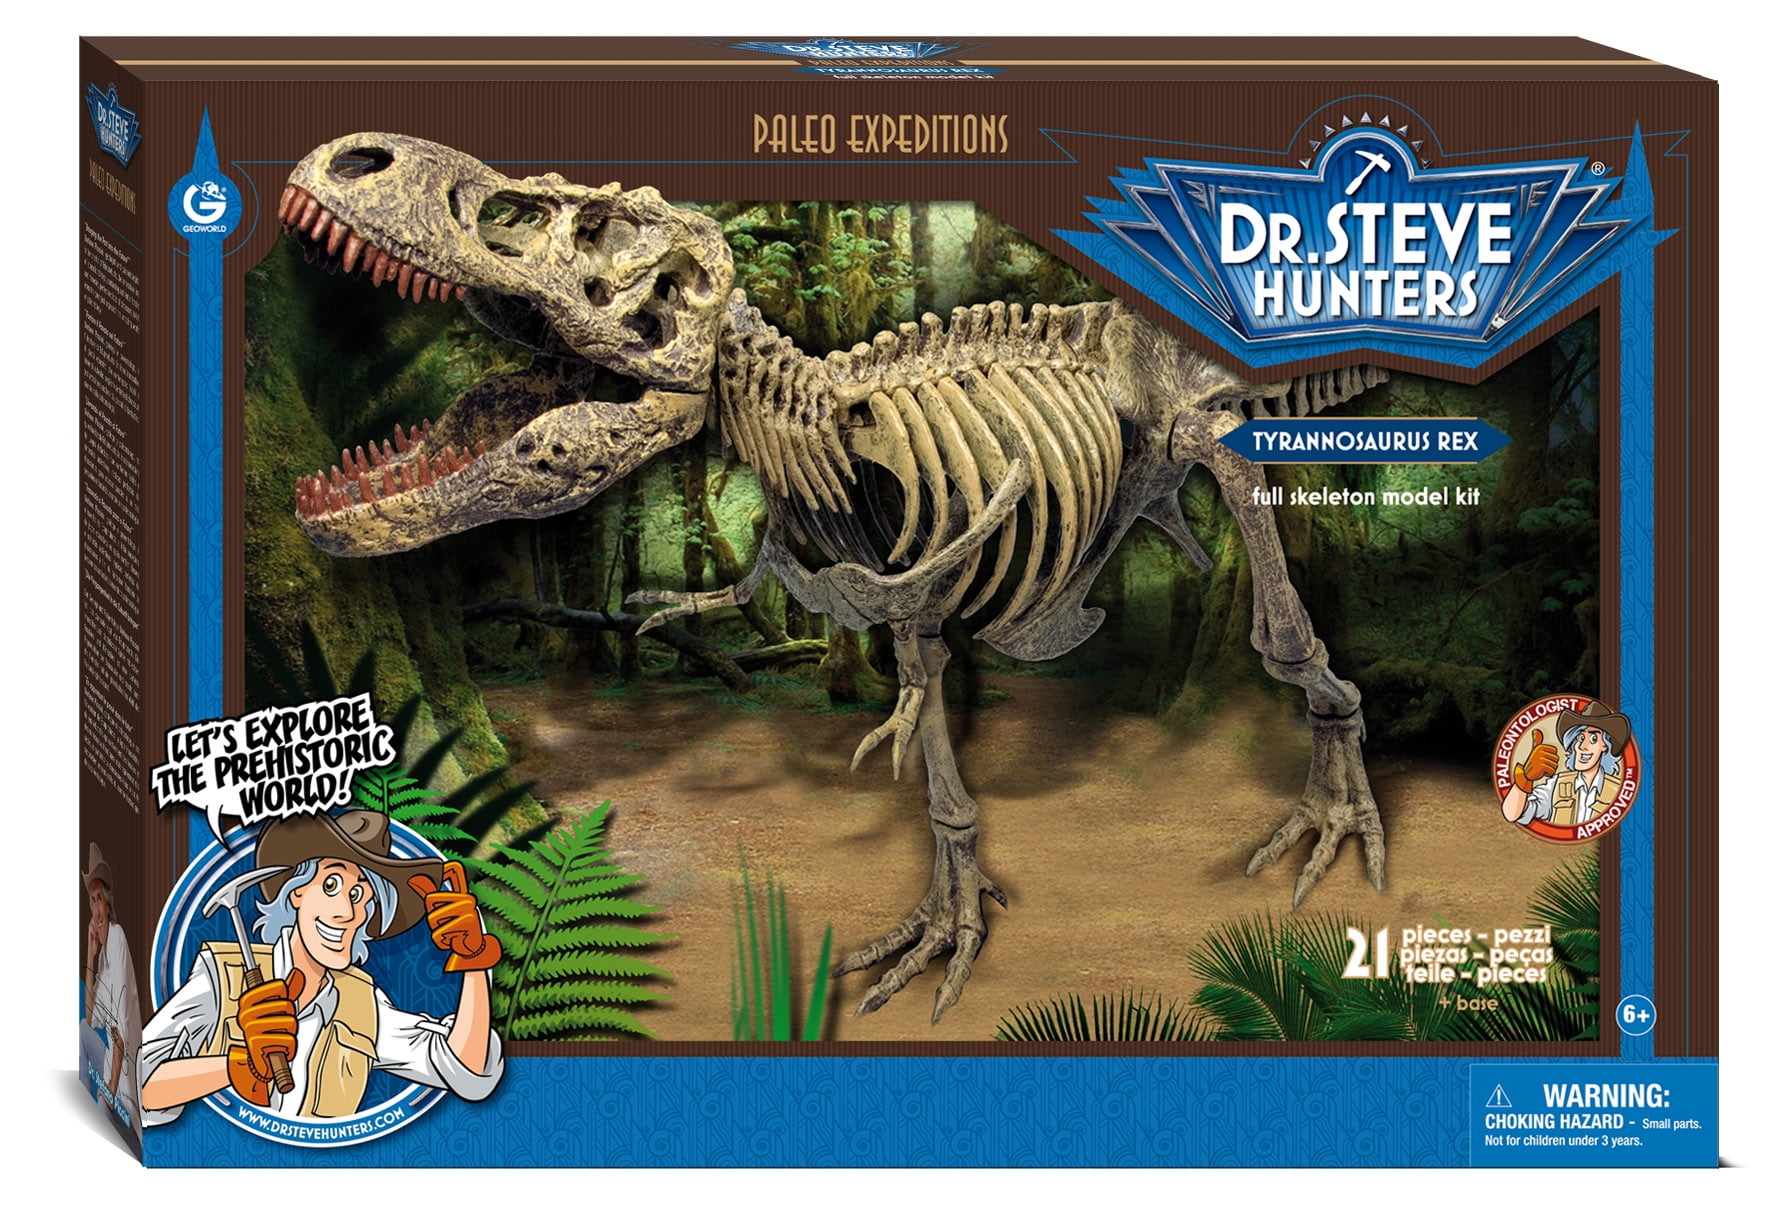 Jurassic World Playleontology Kit Stem T-rex Bones Mattel FTF12 for sale online 